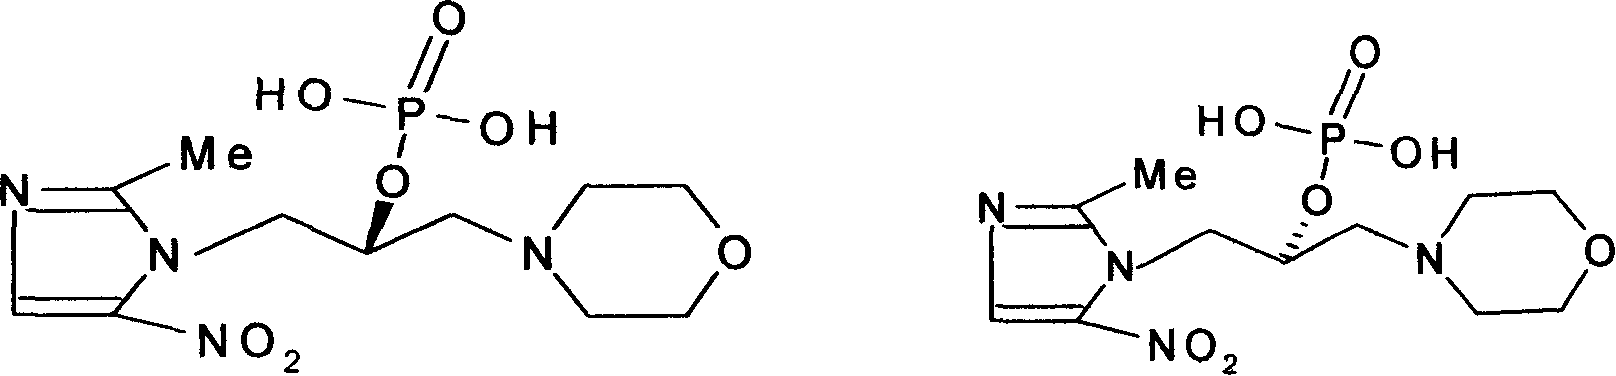 Nitroimidazole derivative for treatment